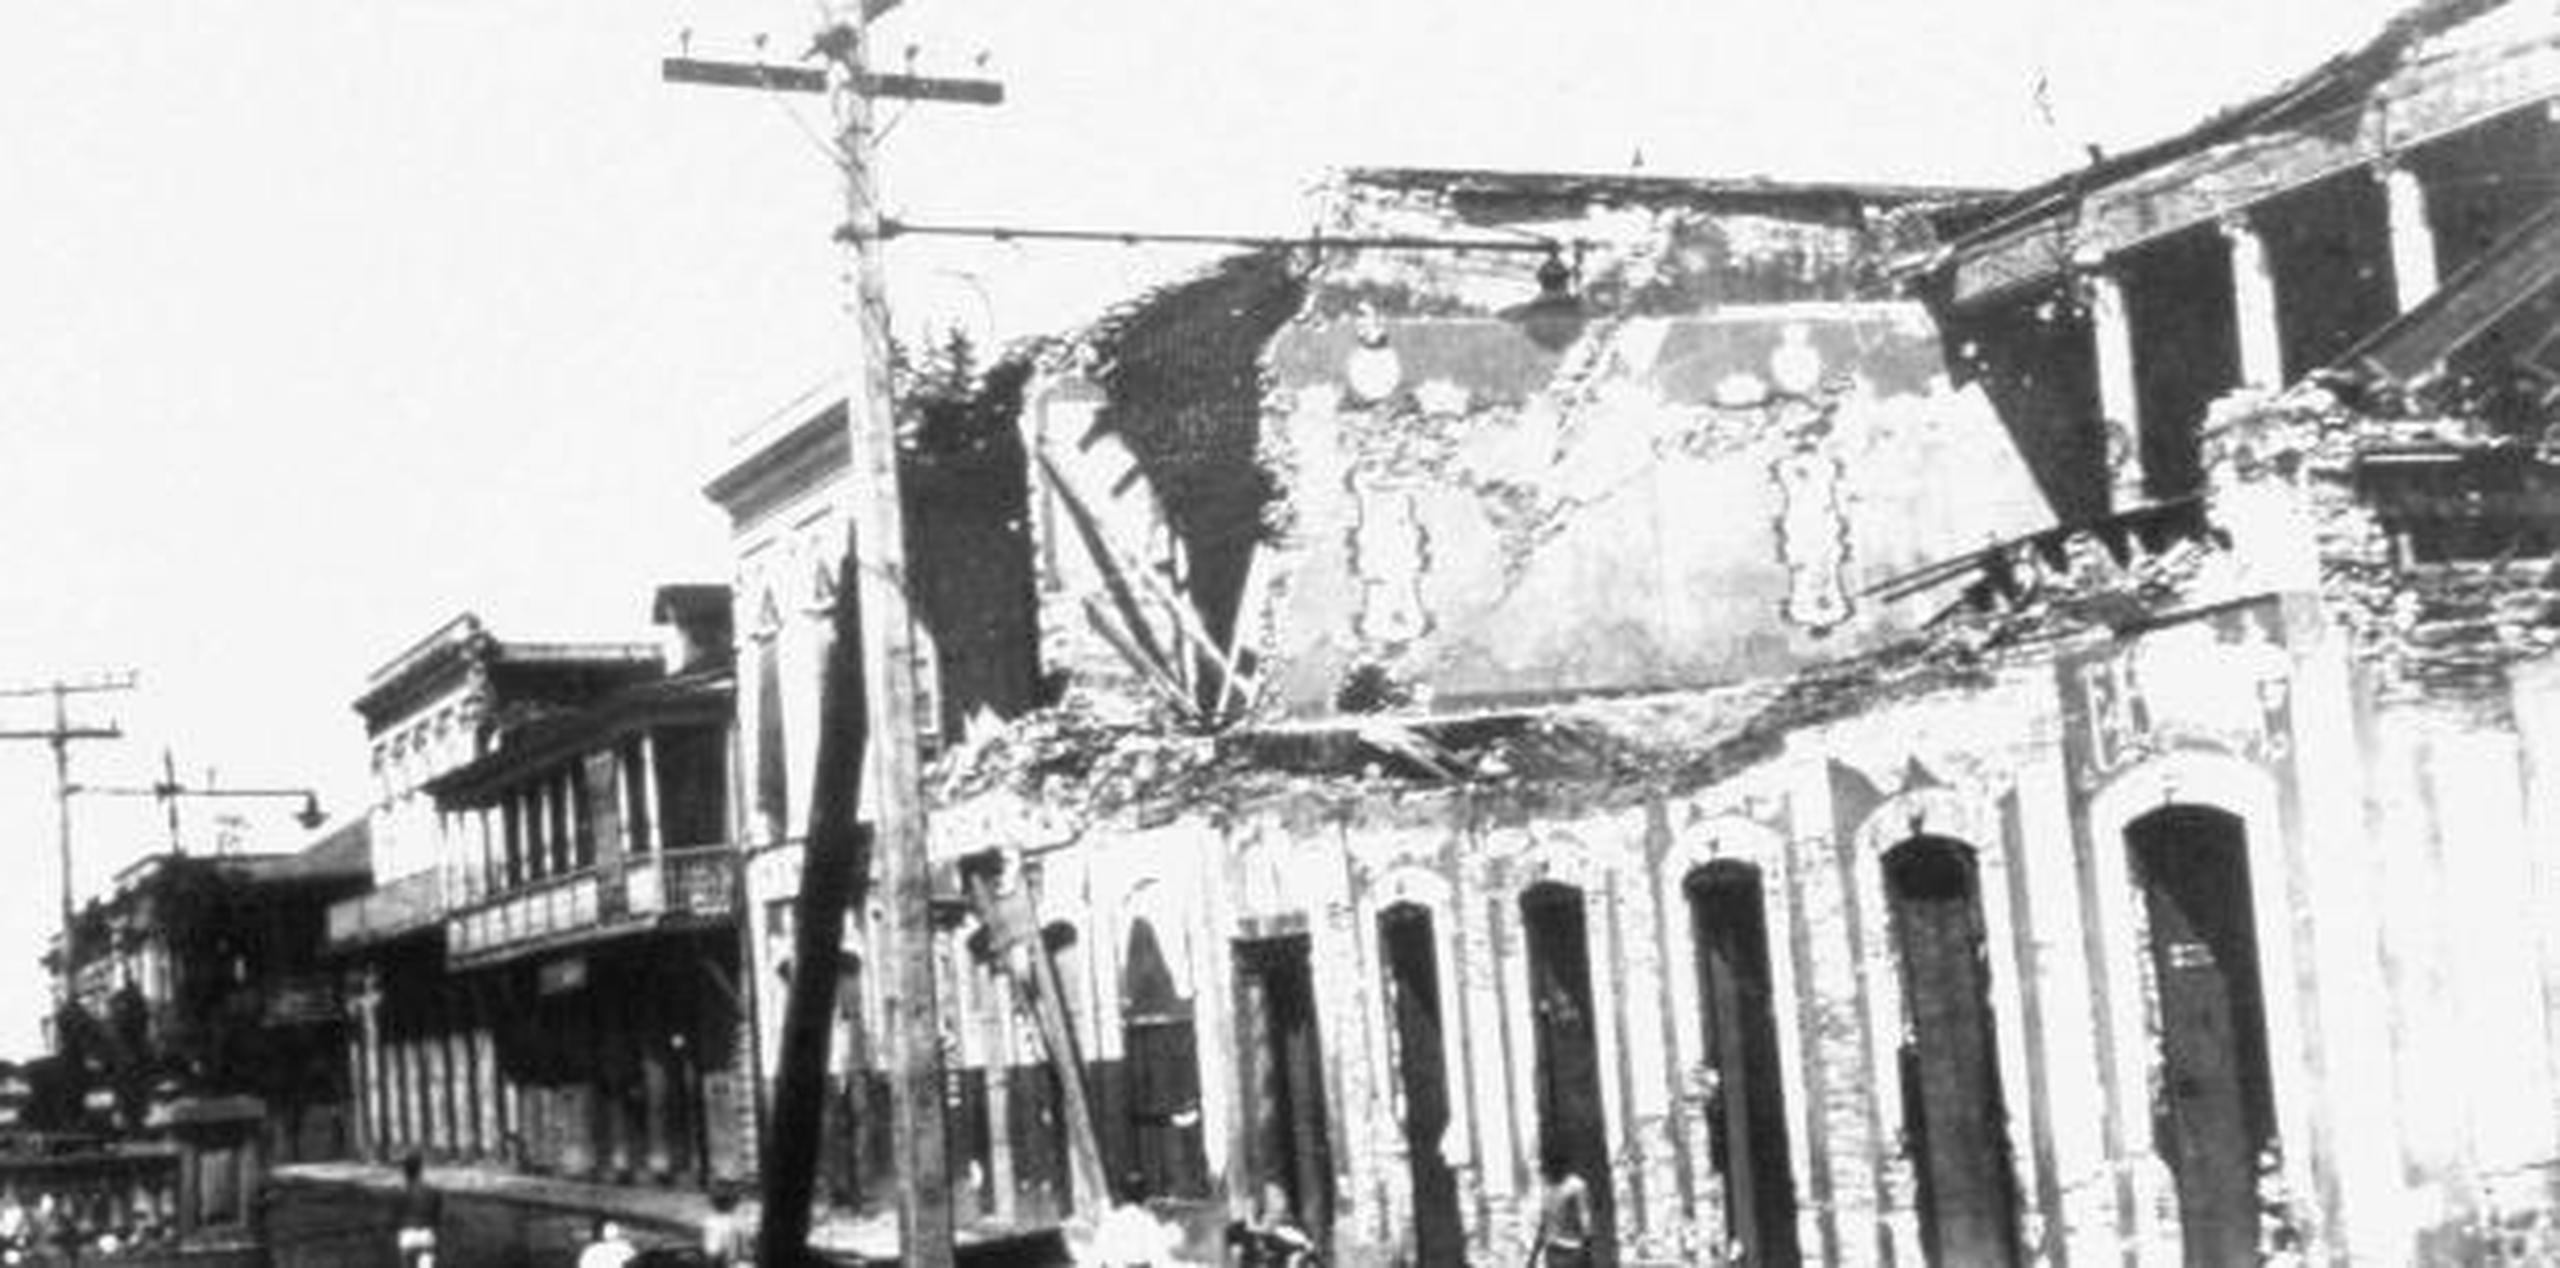 En 1918 Puerto Rico sufrió su último gran sismo en el que murieron 116 personas y hubo pérdidas económicas ascendentes a $4 millones ($71,977,810.22 en la actualidad). (Archivo)